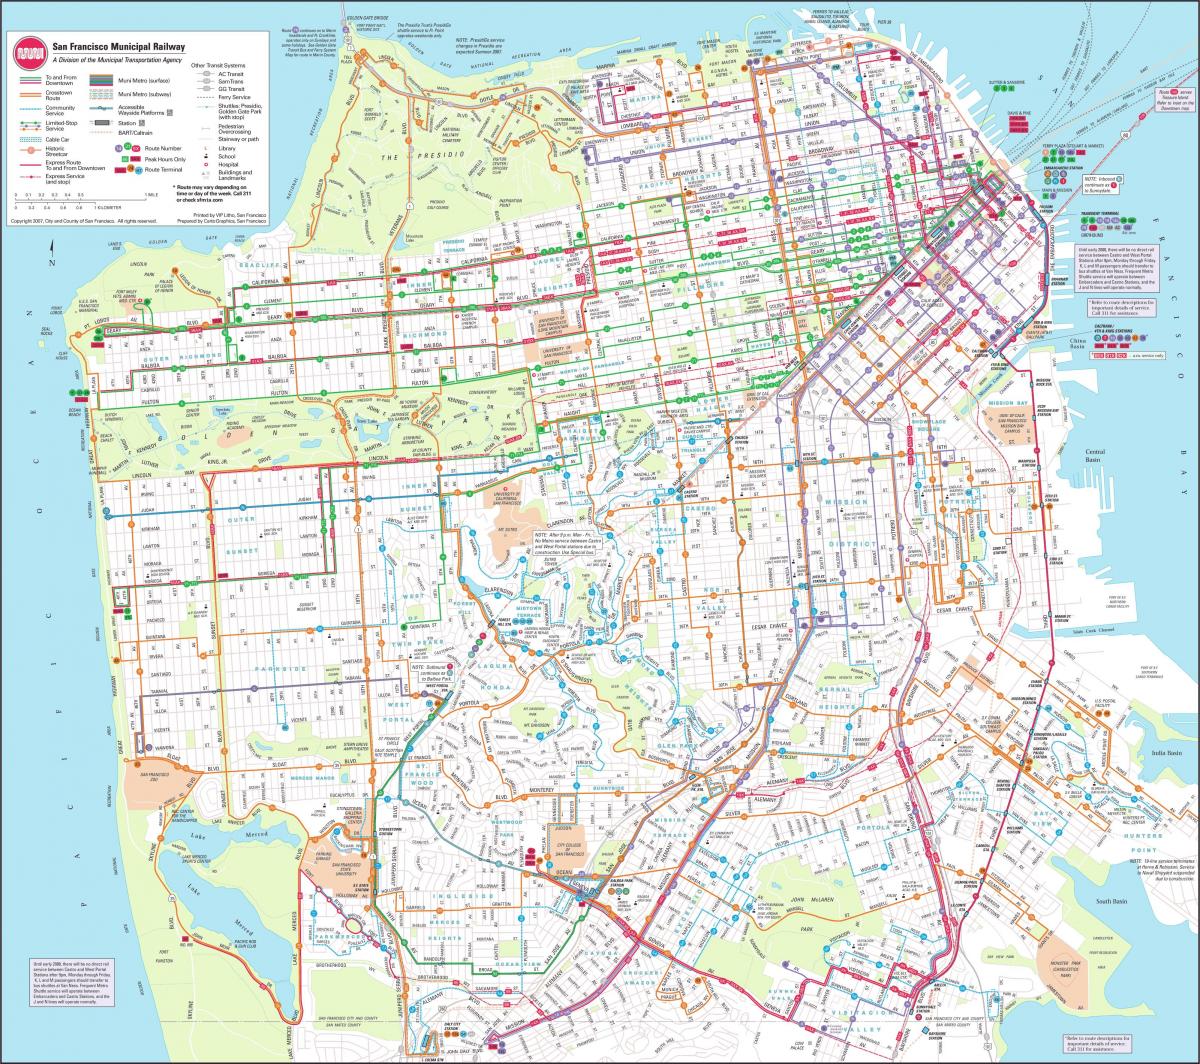 Քարտեզ է Սան Ֆրանցիսկոյի քաղաքային երկաթուղին